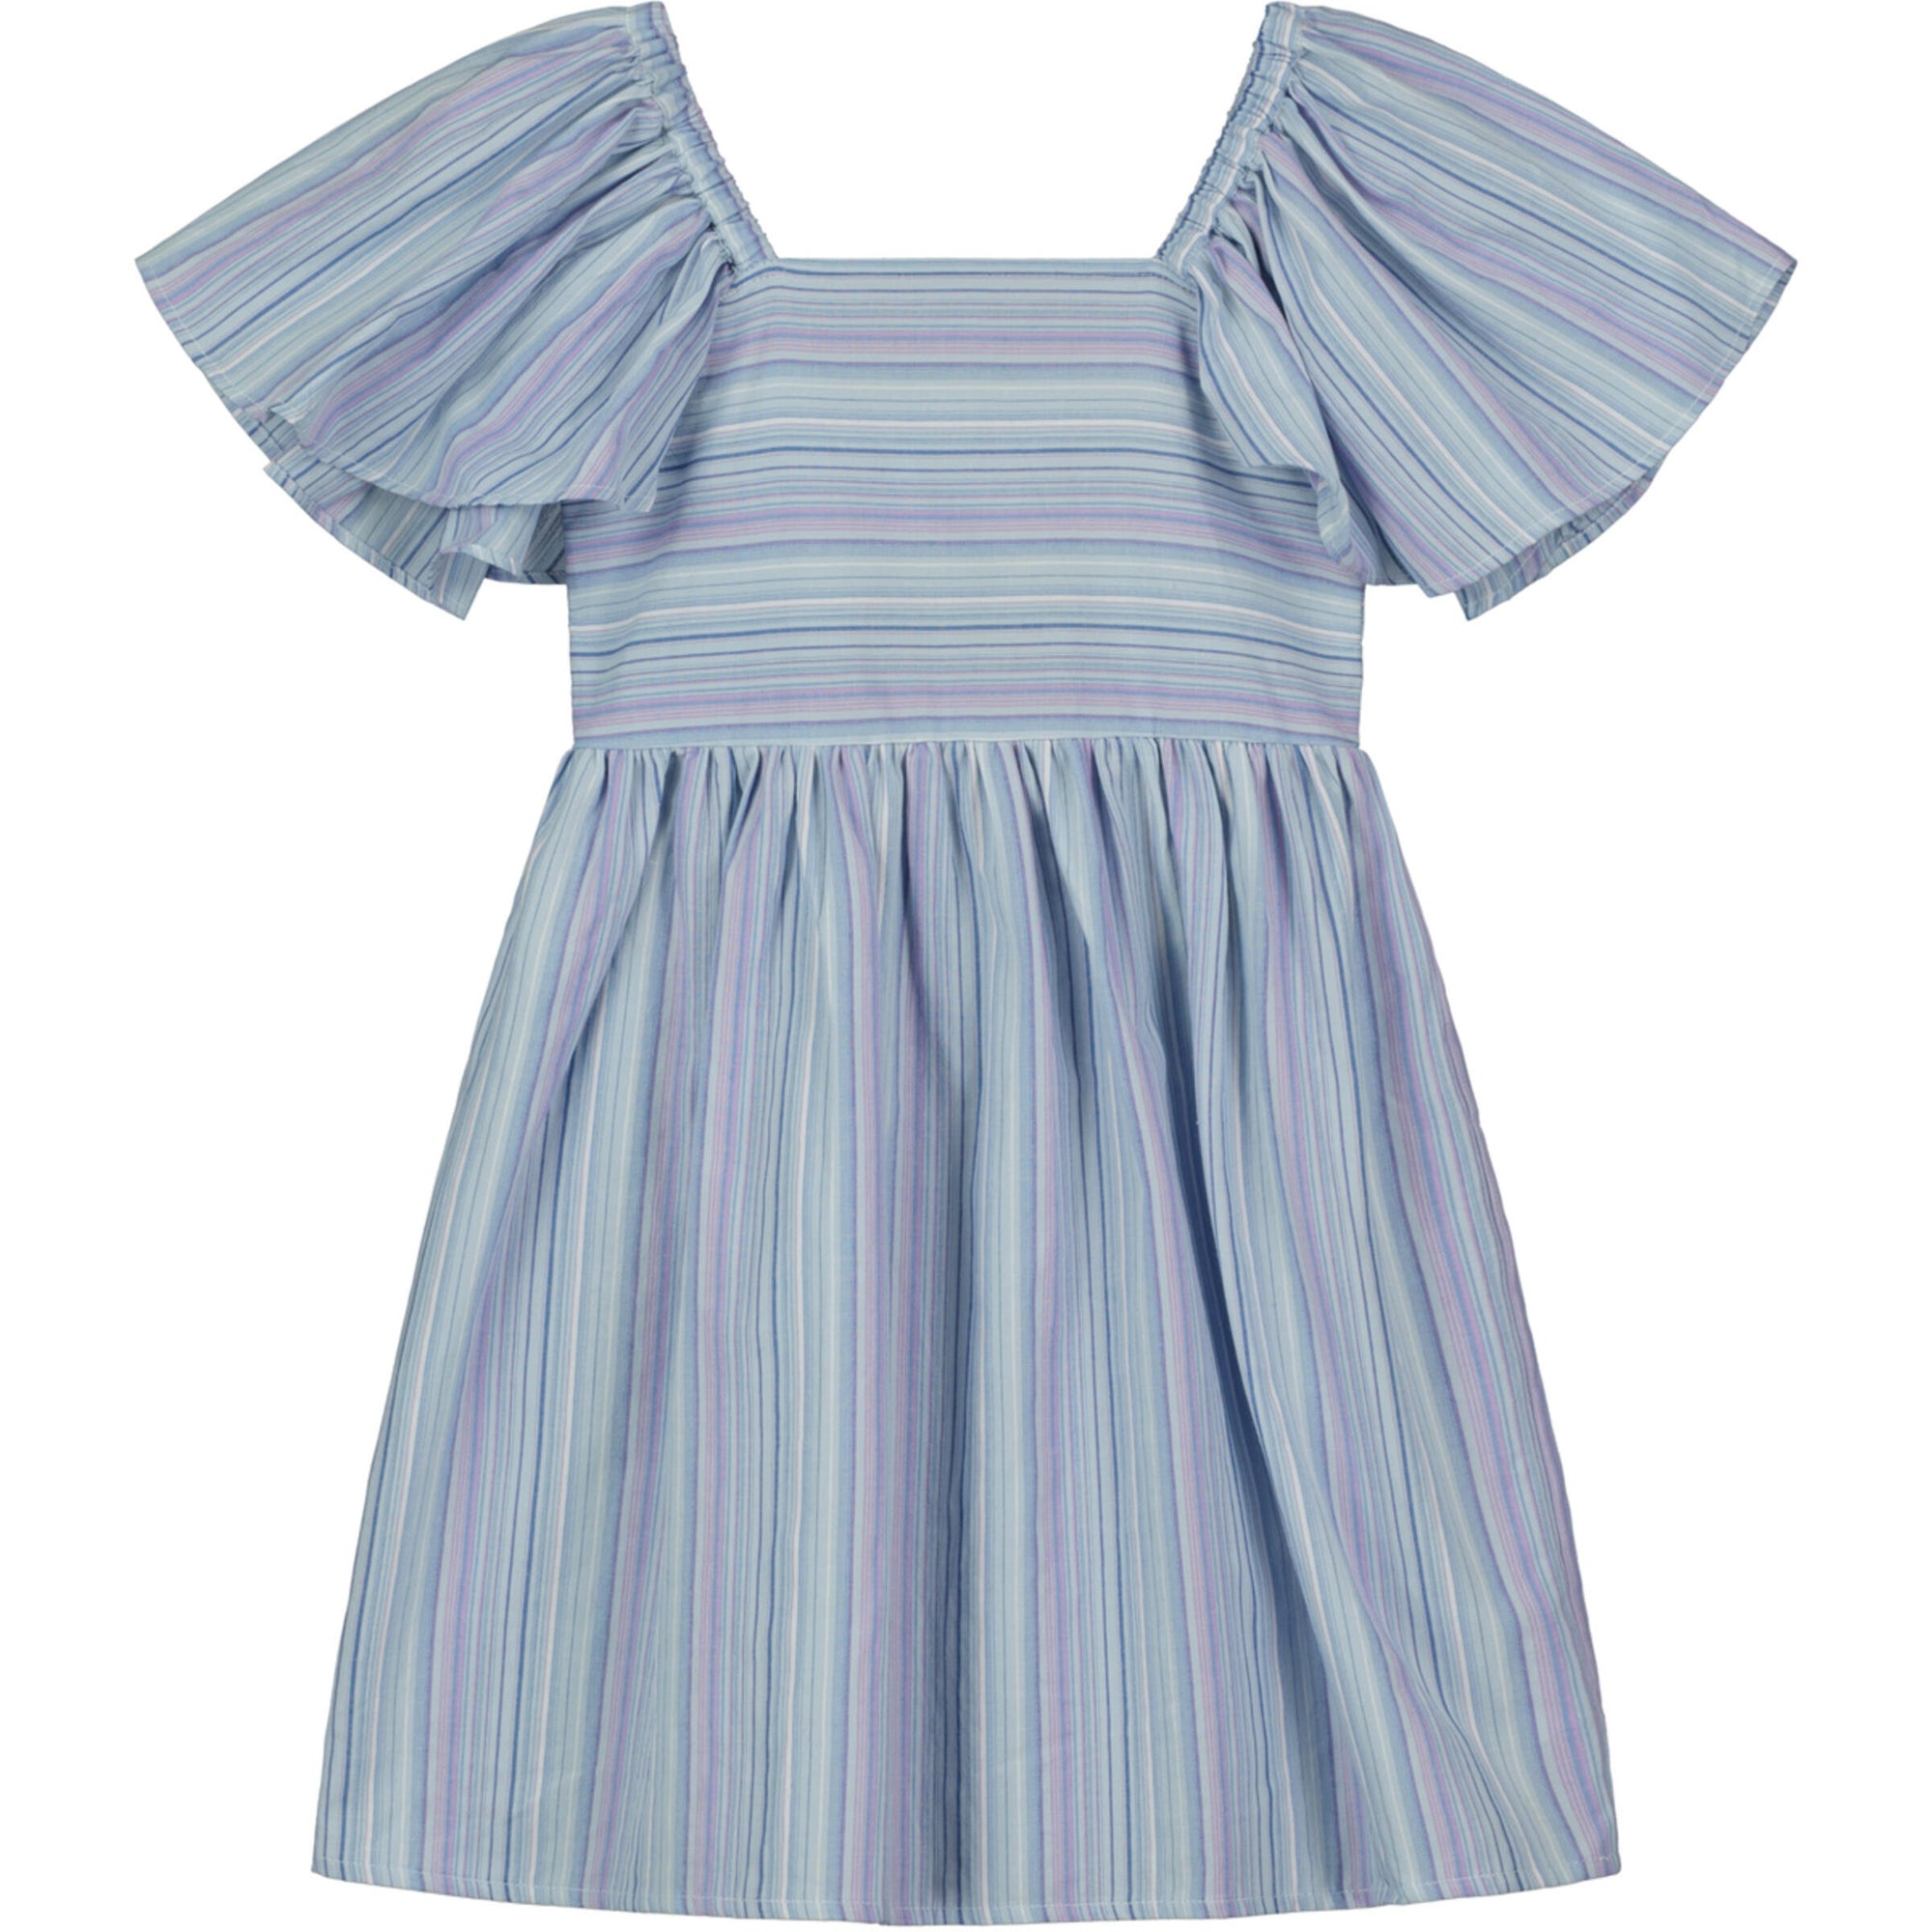 Vignette Hallie Dress / Lavender Stripe